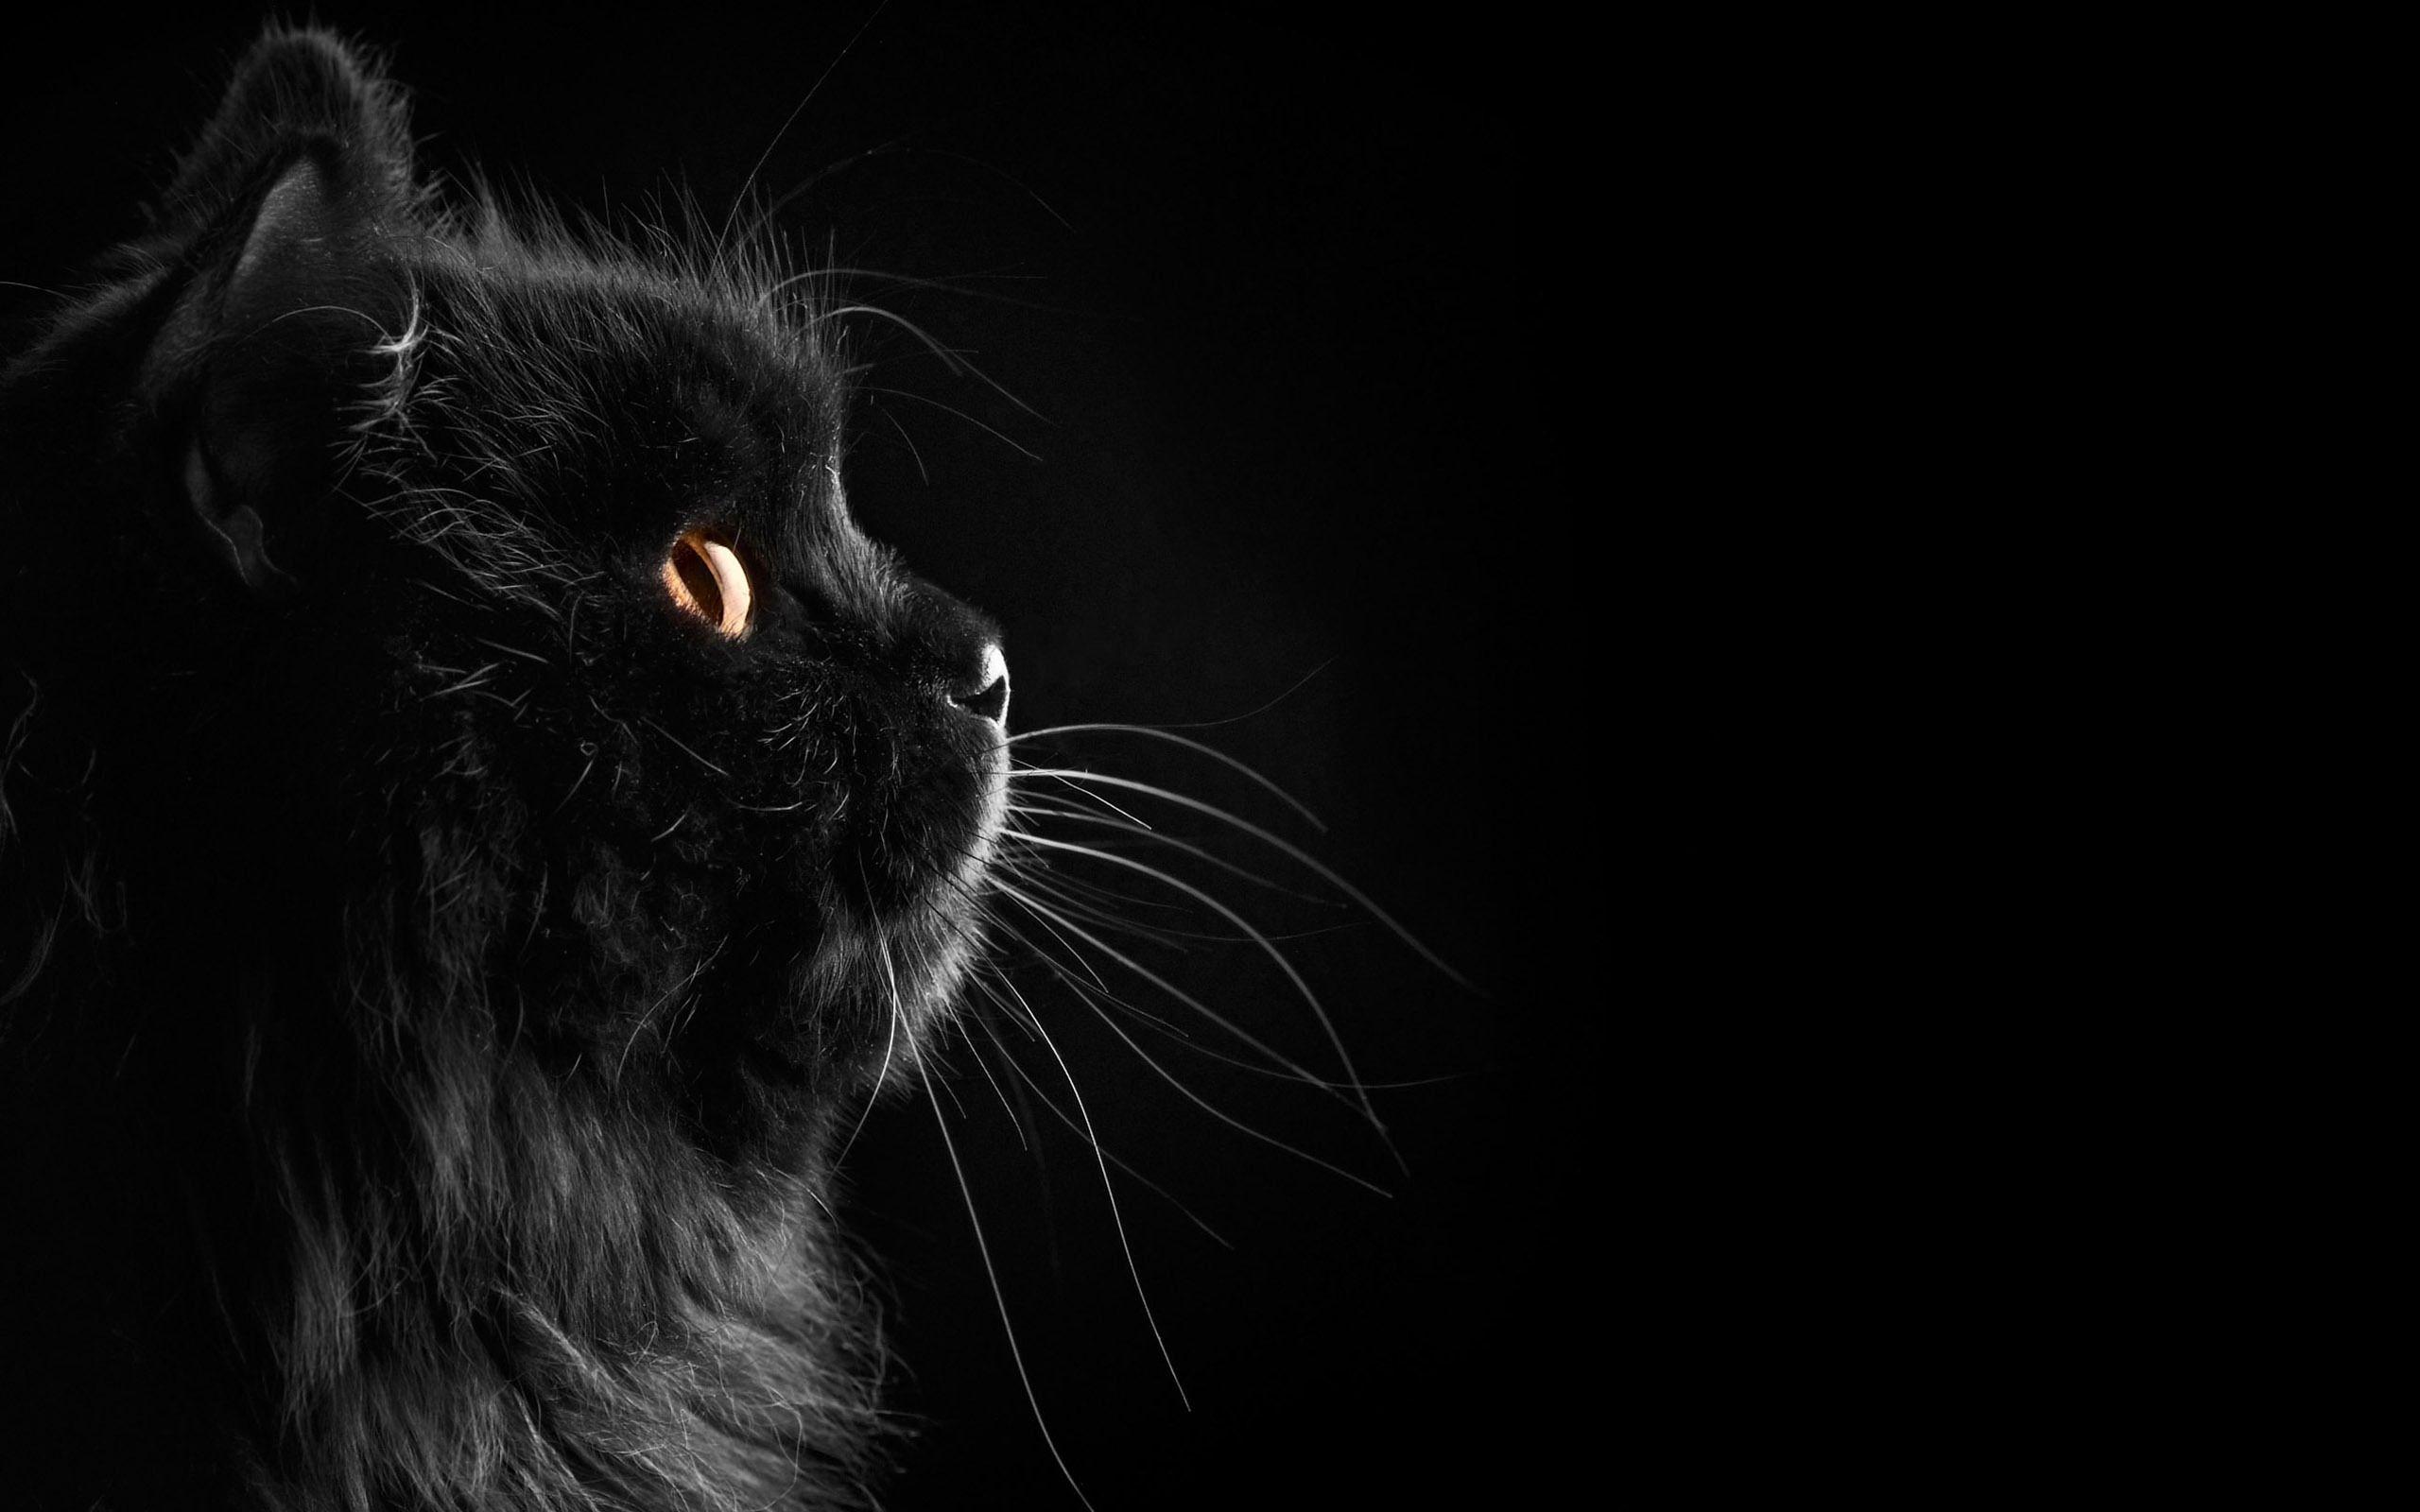 Black Cats Wallpaper